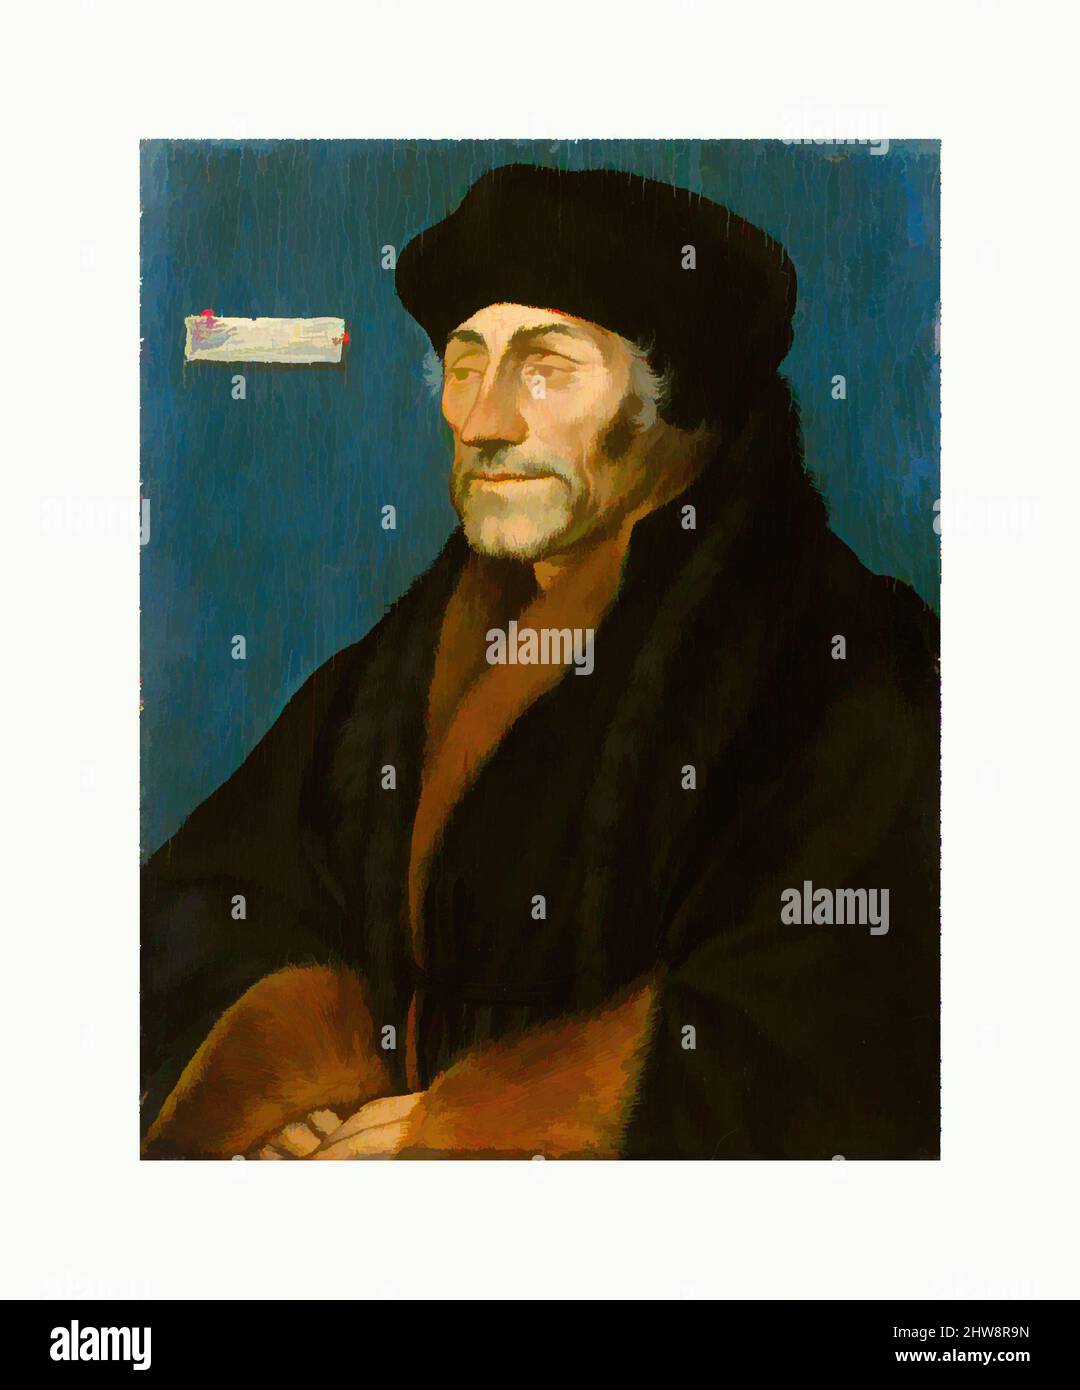 Arte ispirata da Erasmus di Rotterdam, ca. 1532, olio su pannello di tiglio, 7 1/4 x 5 9/16 poll. (18,4 x 14,2 cm); superficie verniciata 6 15/16 x 5 1/2 poll. (17,6 x 14 cm), dipinti, Hans Holbein il giovane (tedesco, Augusta 1497/98–1543 Londra) (e Workshop(?)), Hans Holbein il giovane era uno, opere classiche modernizzate da Artotop con un tuffo di modernità. Forme, colore e valore, impatto visivo accattivante sulle emozioni artistiche attraverso la libertà delle opere d'arte in modo contemporaneo. Un messaggio senza tempo che persegue una nuova direzione selvaggiamente creativa. Artisti che si rivolgono al supporto digitale e creano l'NFT Artotop Foto Stock